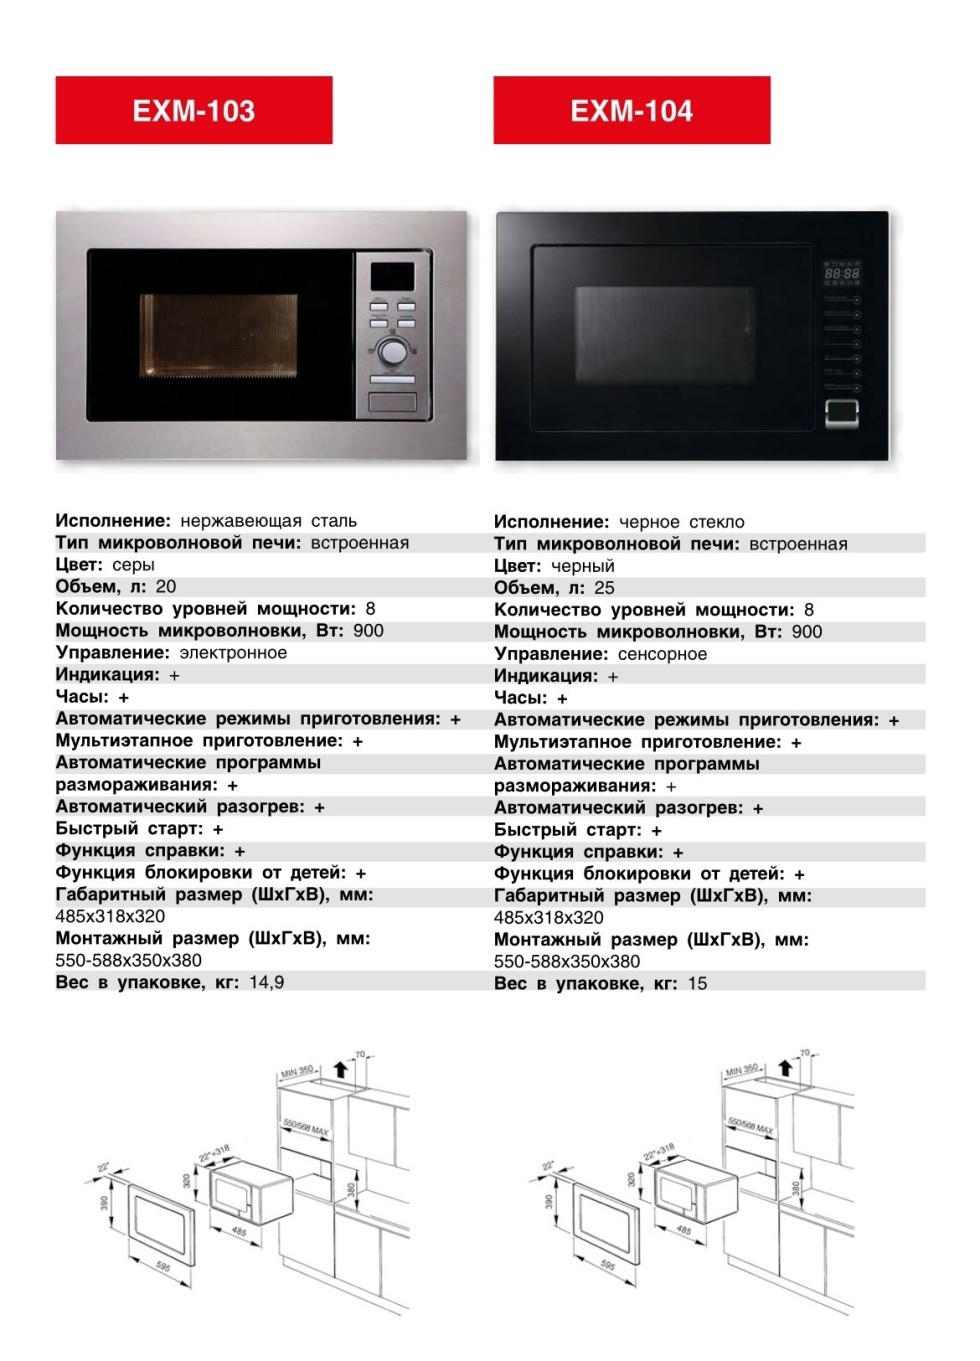 Встраиваемая микроволновка EXITEQ EXM-104. Продажа встраиваемой техники в Беларуси недорого